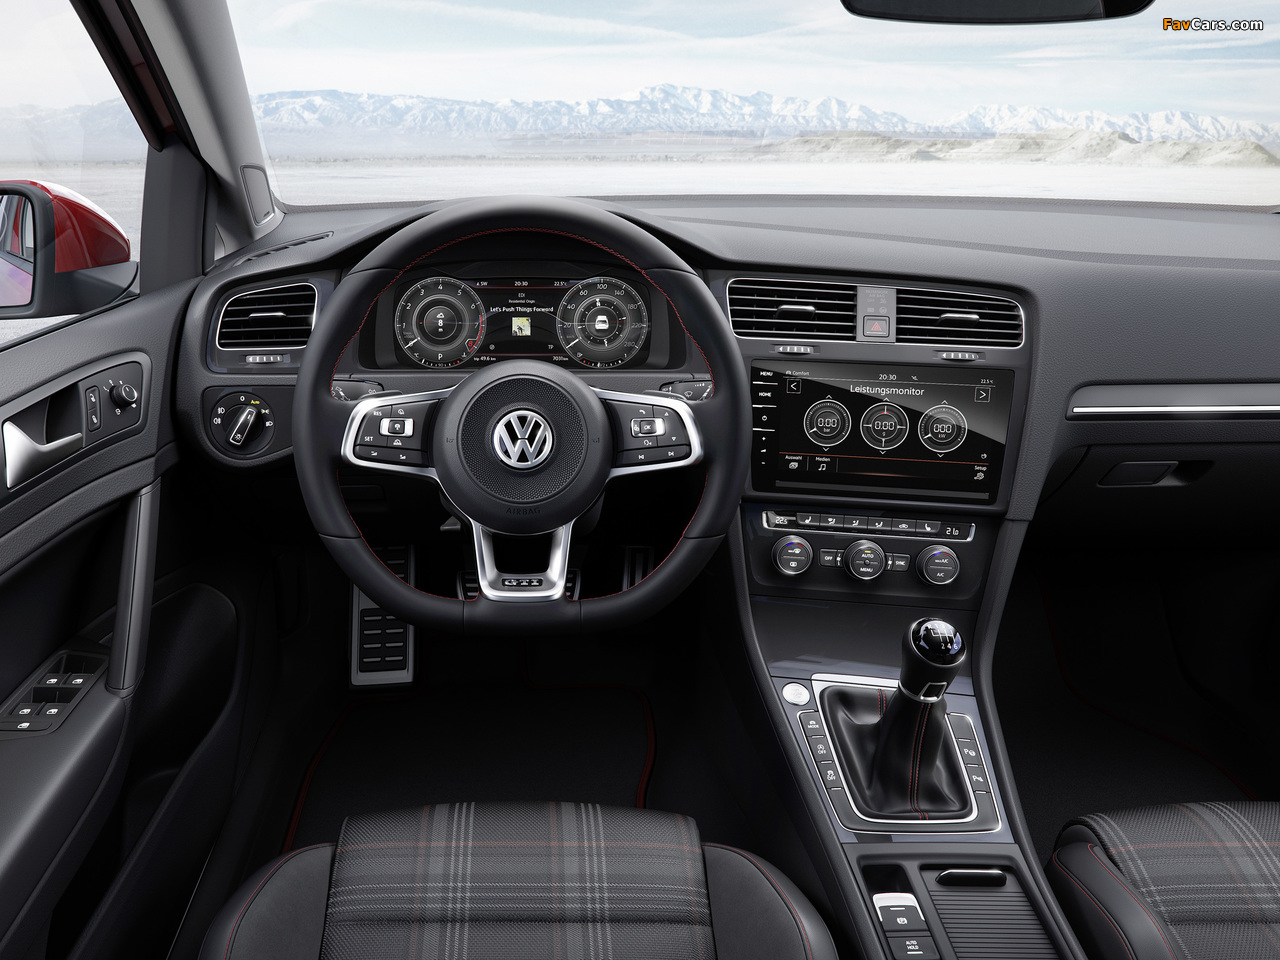 Volkswagen Golf GTI 3-door (Typ 5G) 2017 images (1280 x 960)